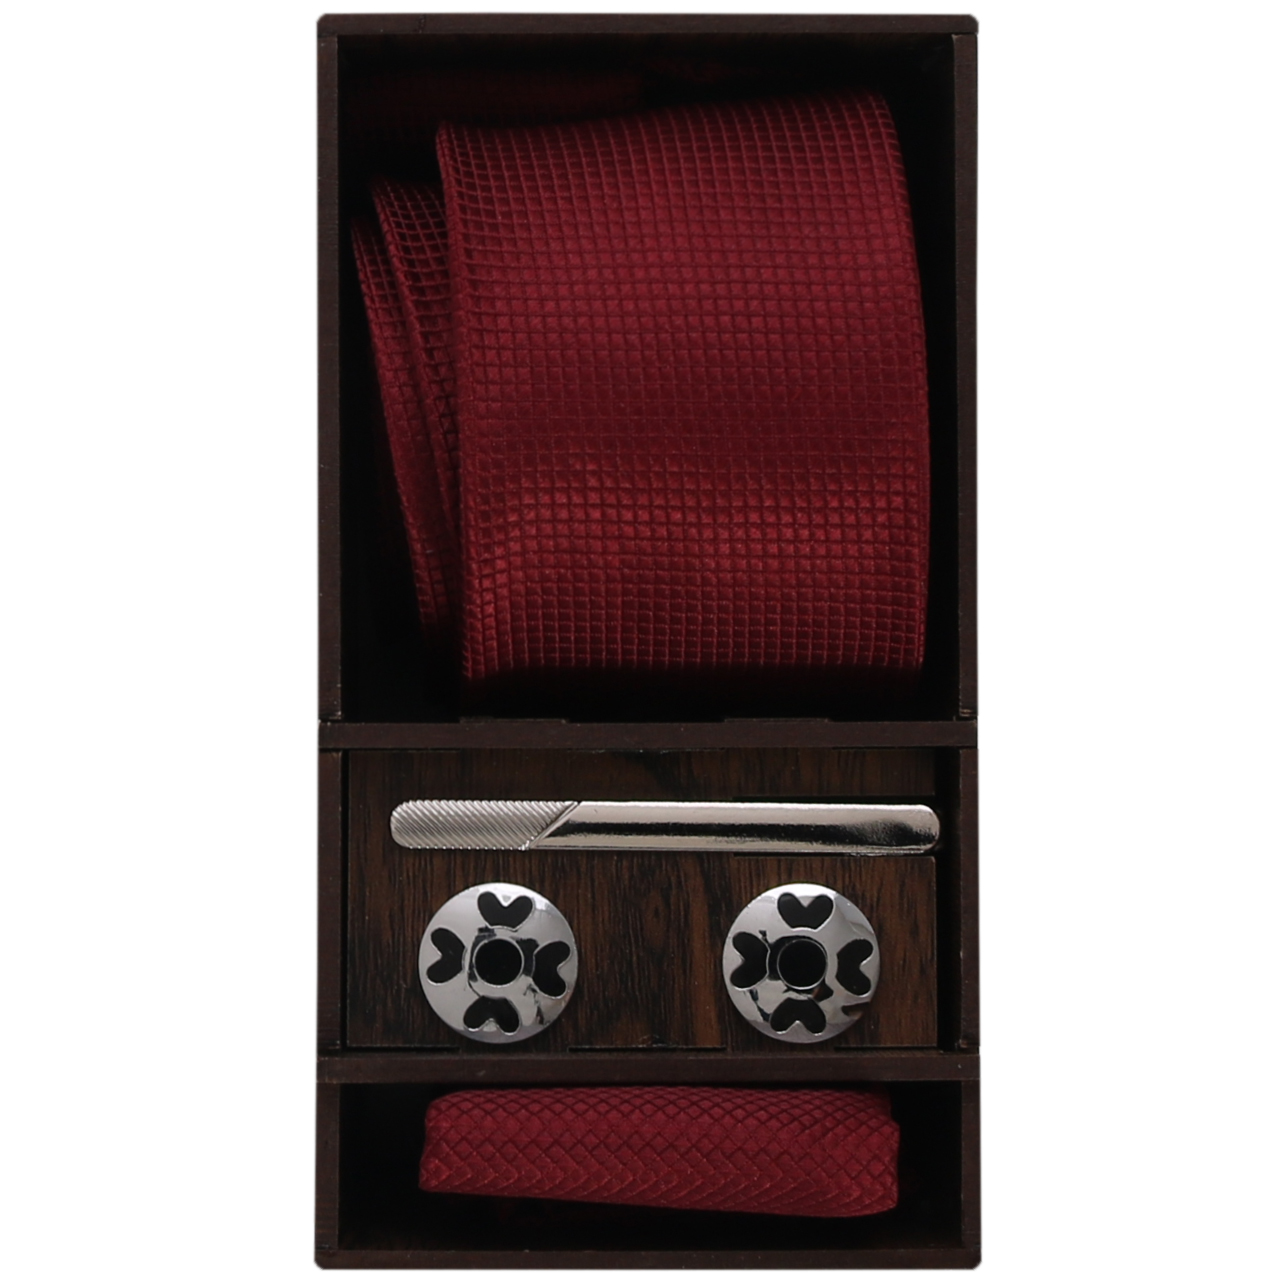  ست کراوات و گیره کراوات و دستمال جیب و دکمه سردست مردانه مدل PJ-103483